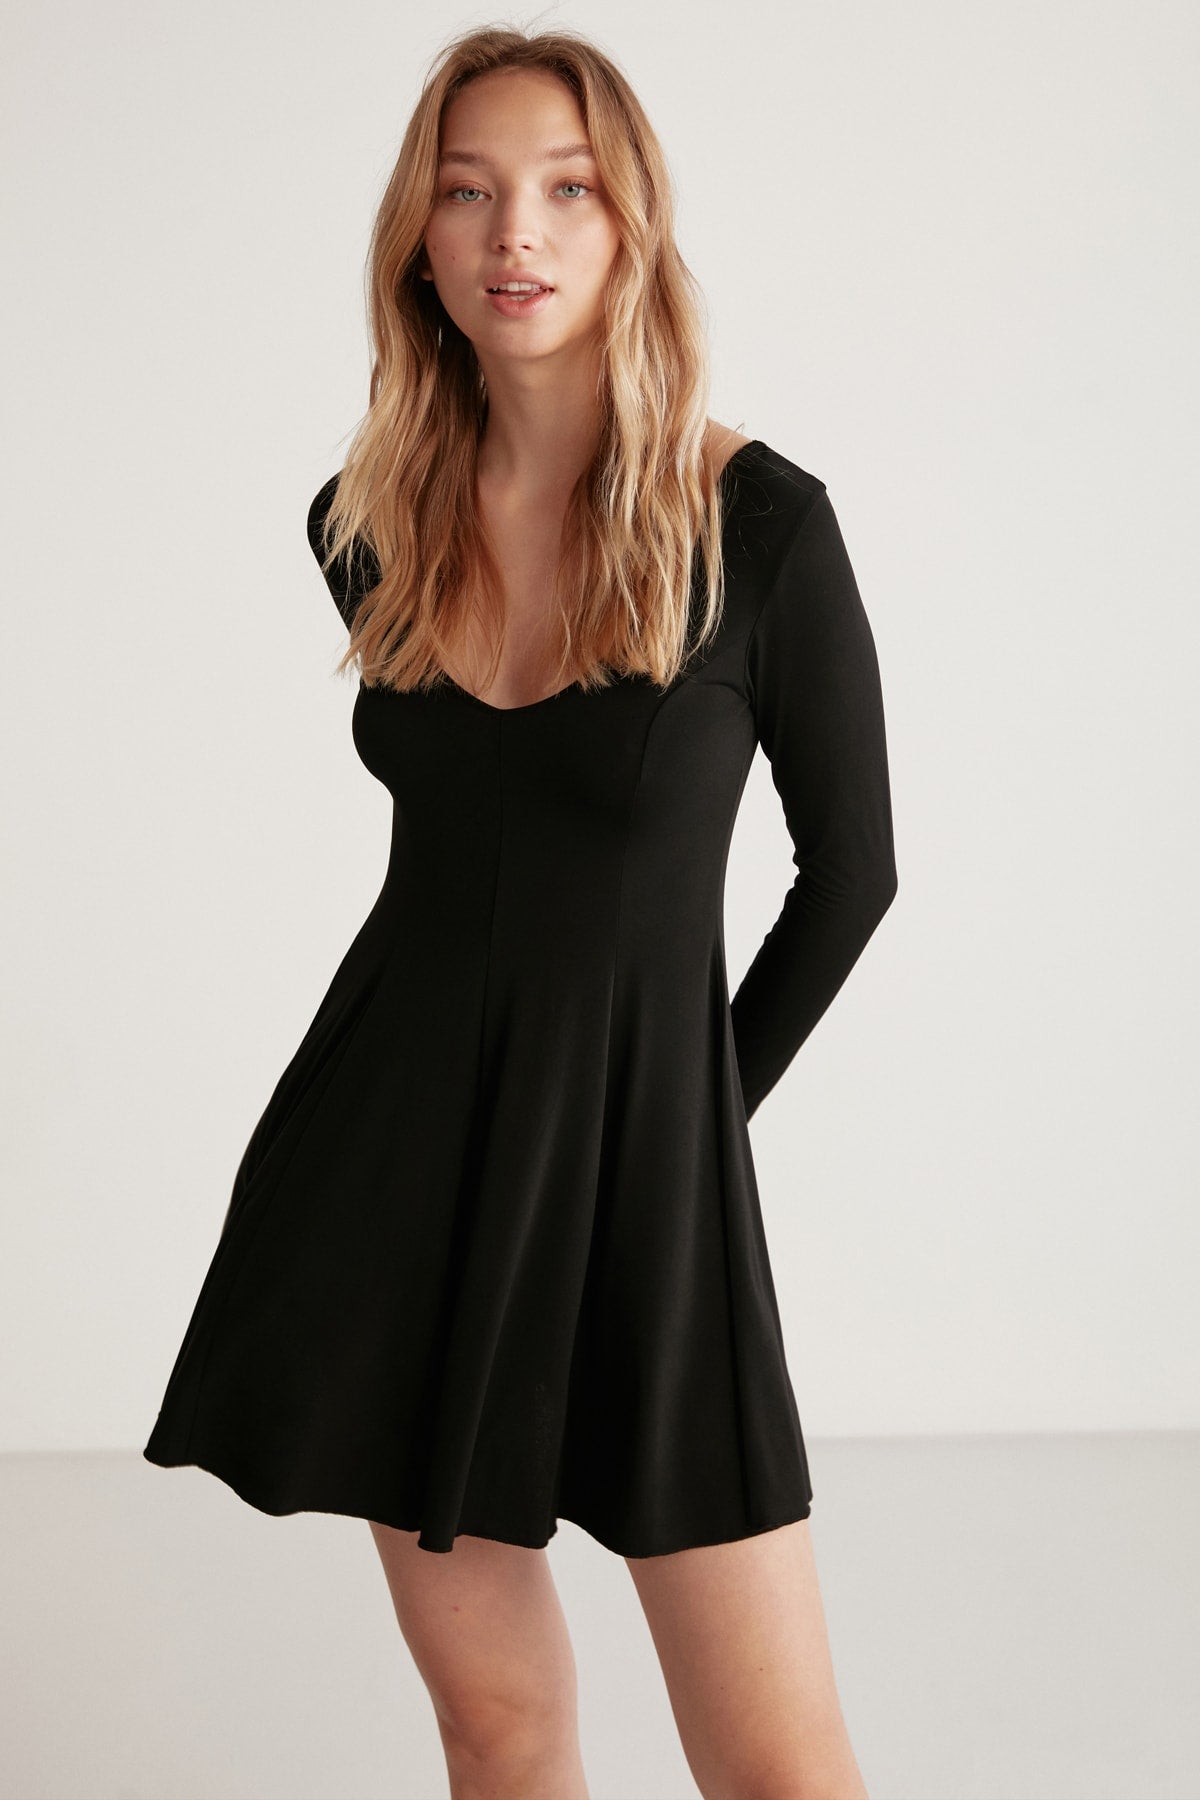 Zeyna black dress